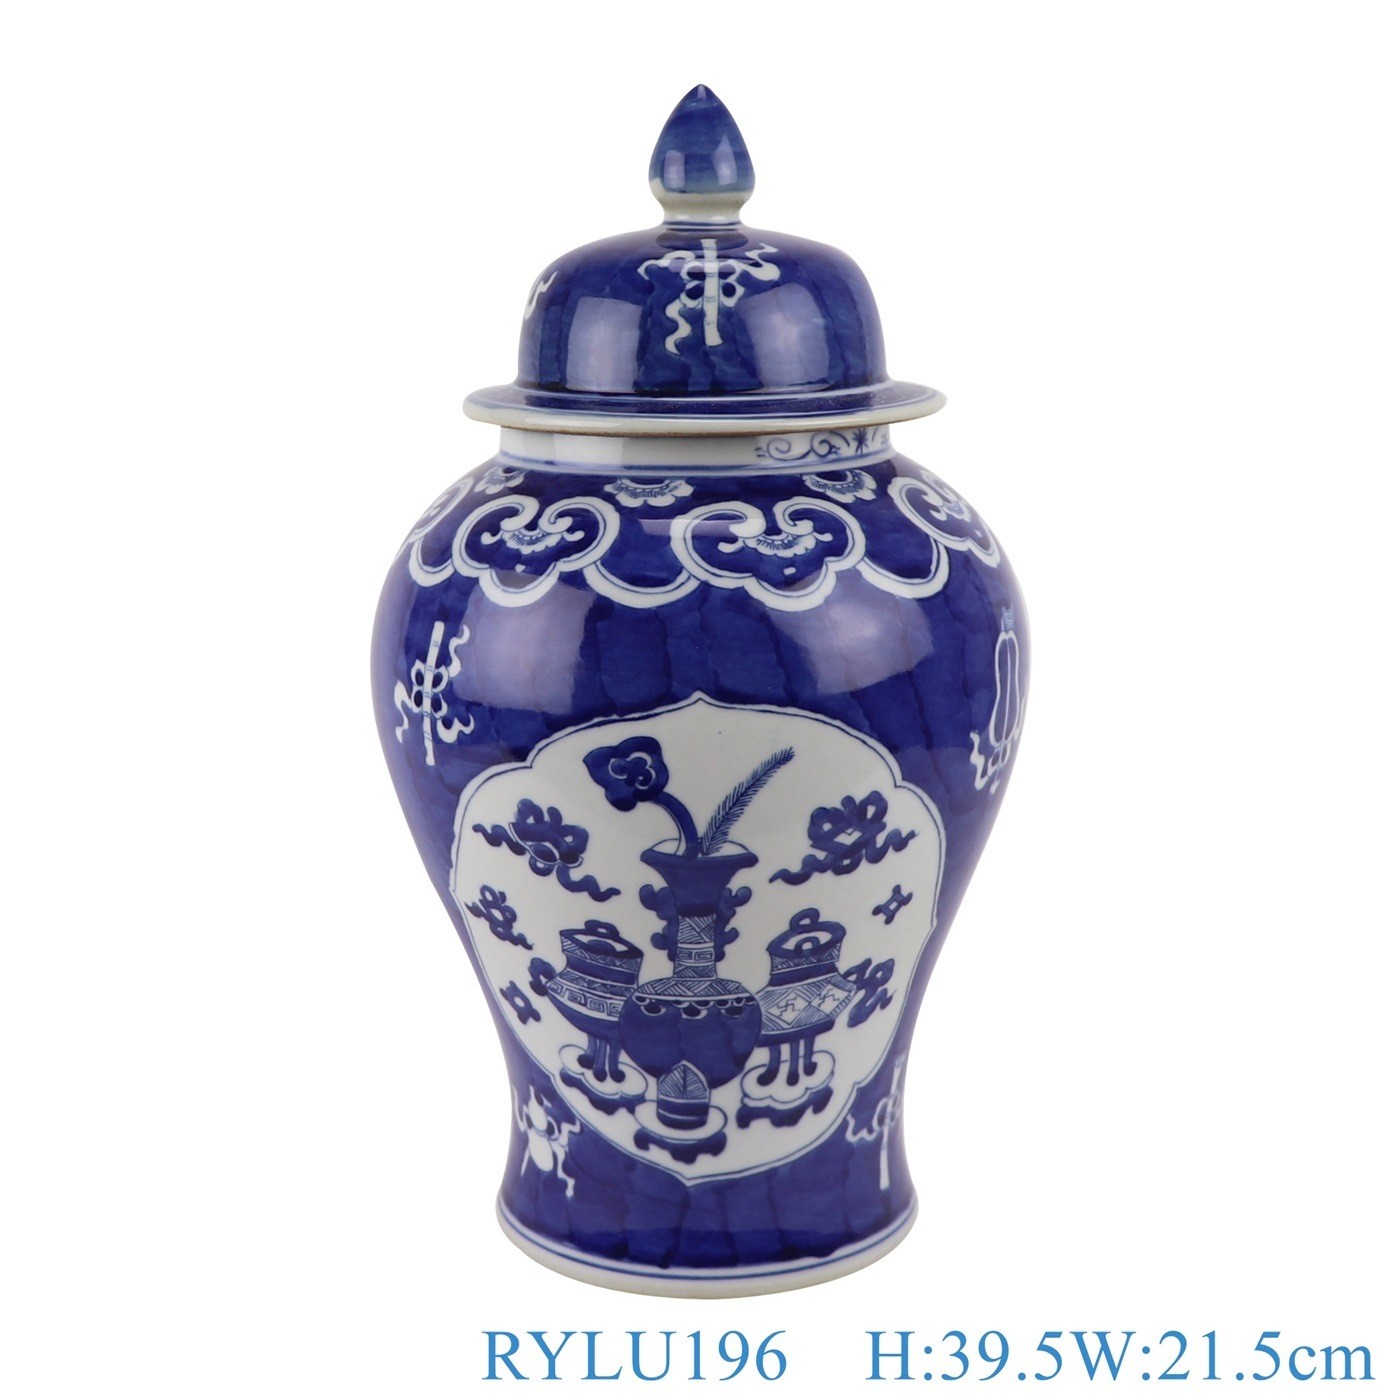 Antique Blue Open Window Twisted Floral Grain Porcelain Storage Ginger Jar